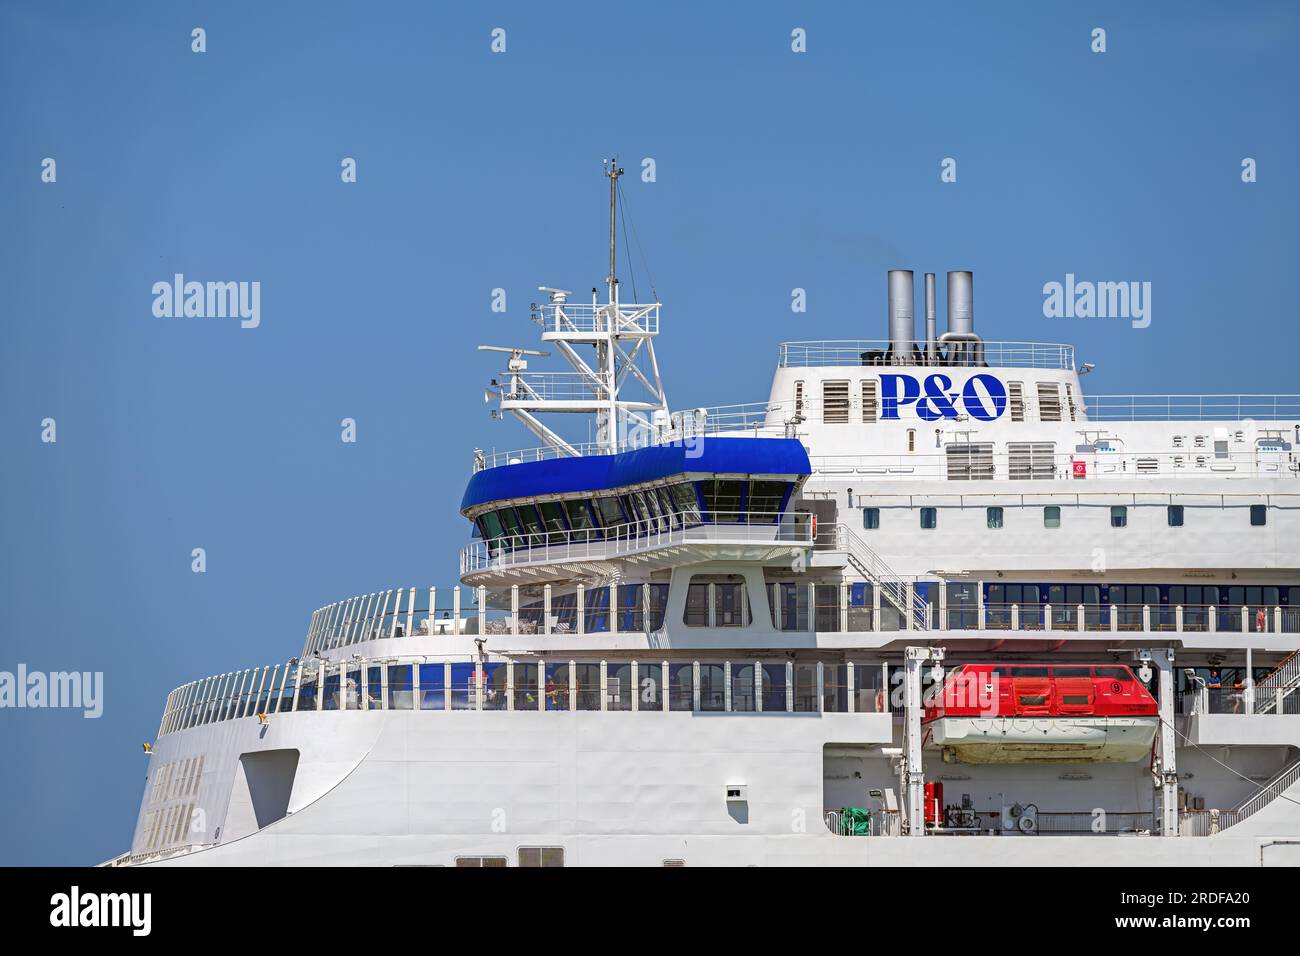 P&o Pioneer è un traghetto a doppia estremità che attraversa la Manica gestito da P&o Ferries tra dover e Calais. Foto Stock